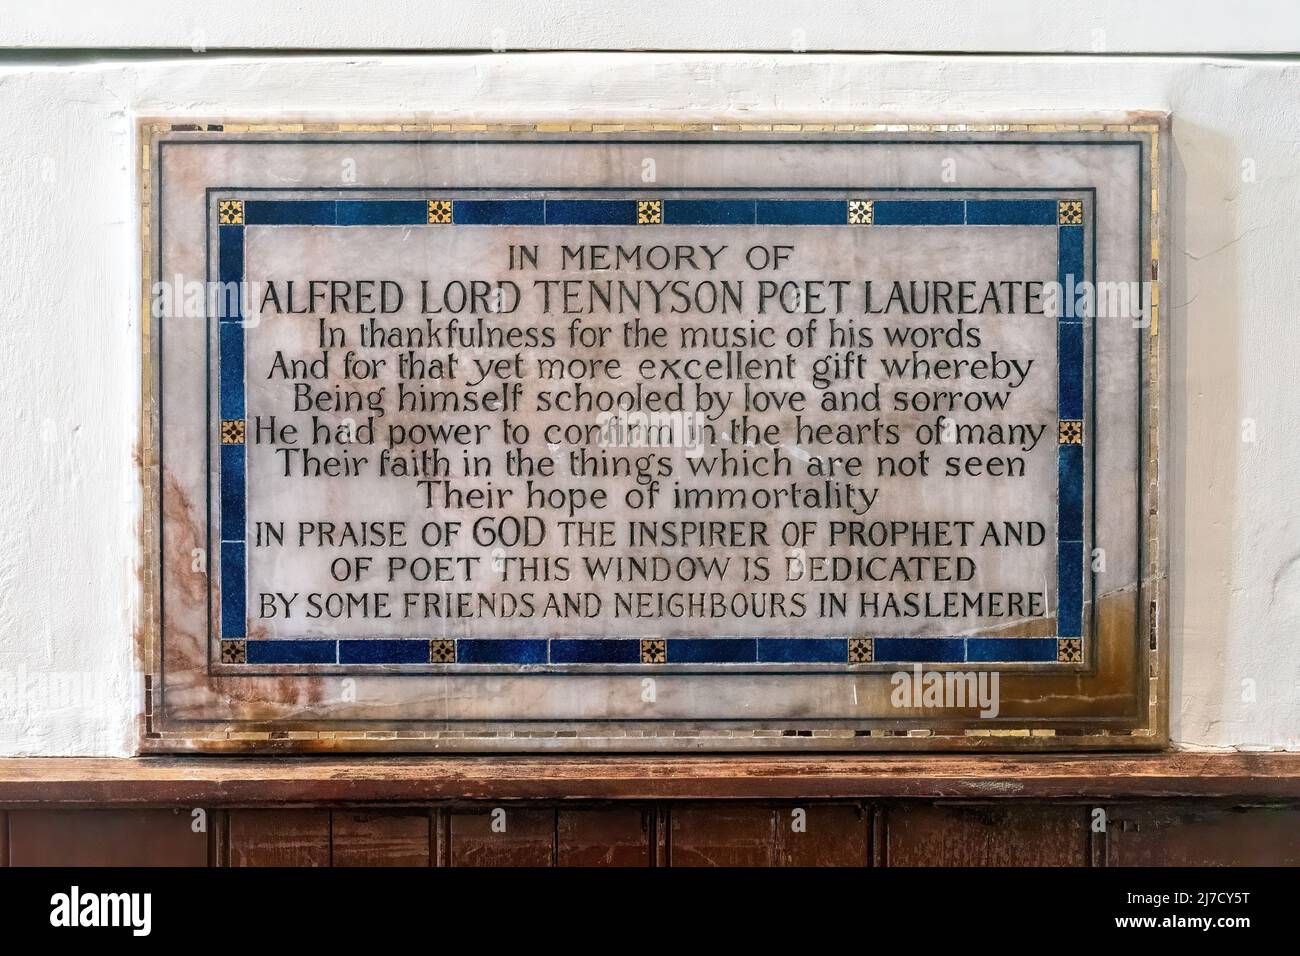 Plaque sous le vitrail à la mémoire du poète Lord Tennyson dans l'église St Bartholomew, Haslemere, Angleterre, Royaume-Uni Banque D'Images